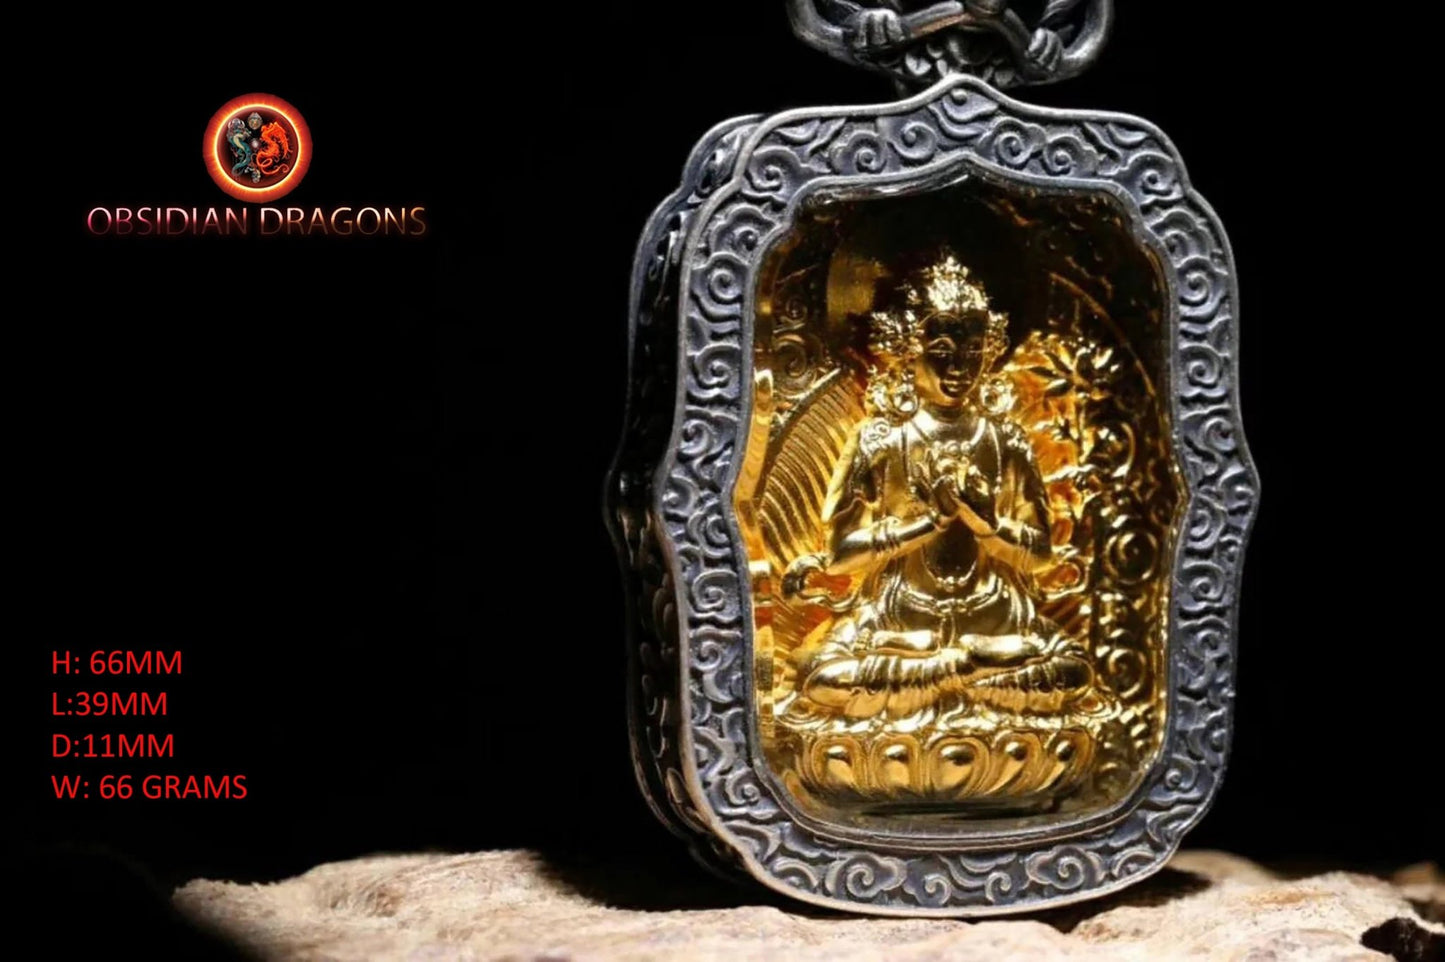 Pendentif bouddha Samantabhadra amulette de protection du bouddhisme vajrayana esoterique tibétain. représentation de Garuda sur la beliere. - obsidian dragon